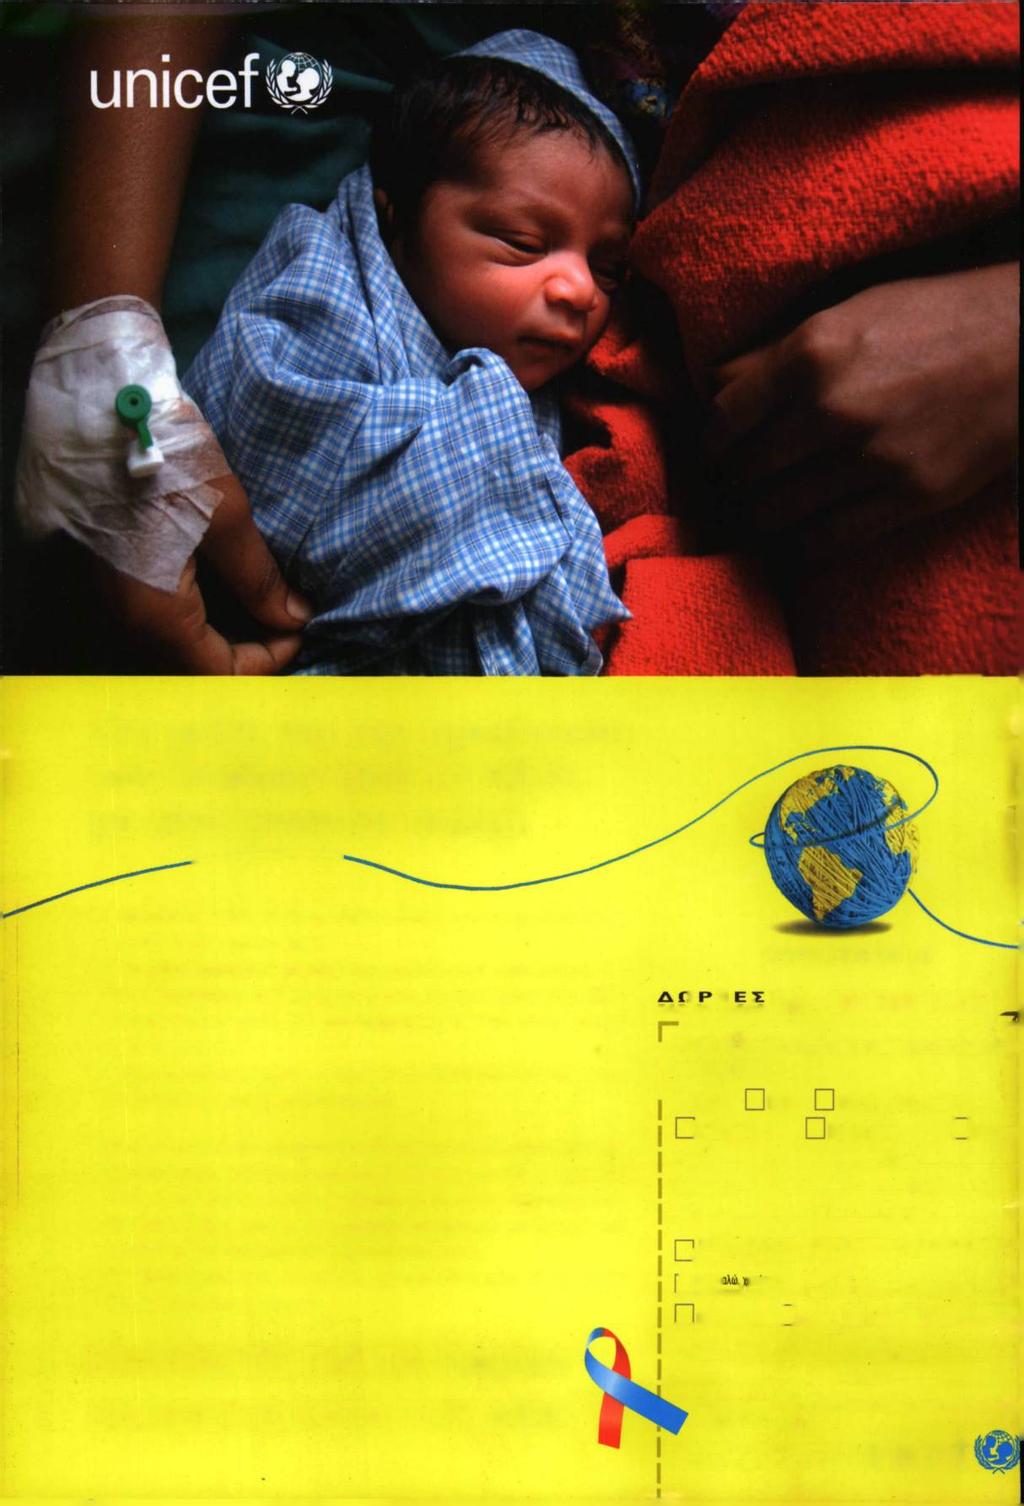 Στη μάχη για την προστασία των παιδιών από το AIDS, με λίγα γίνονται πολλά. H UNICEF ευχαριστείτο έντυπο γιατη φιλοξενία του. 500.